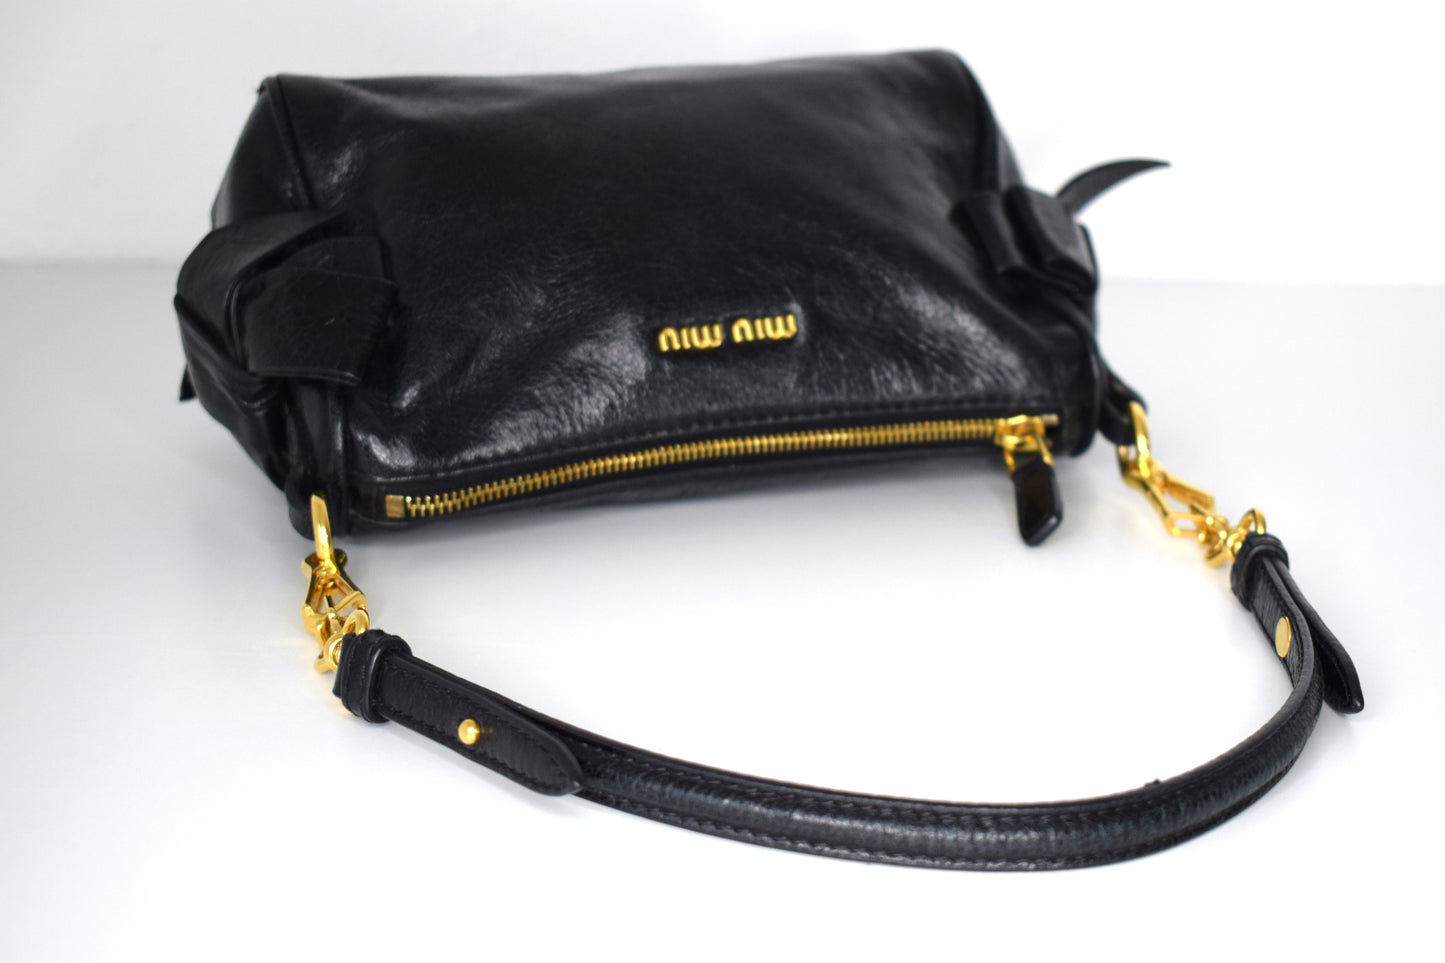 Miu Miu "Bow Bag" Schultertasche / Clutch Schwarz Gold